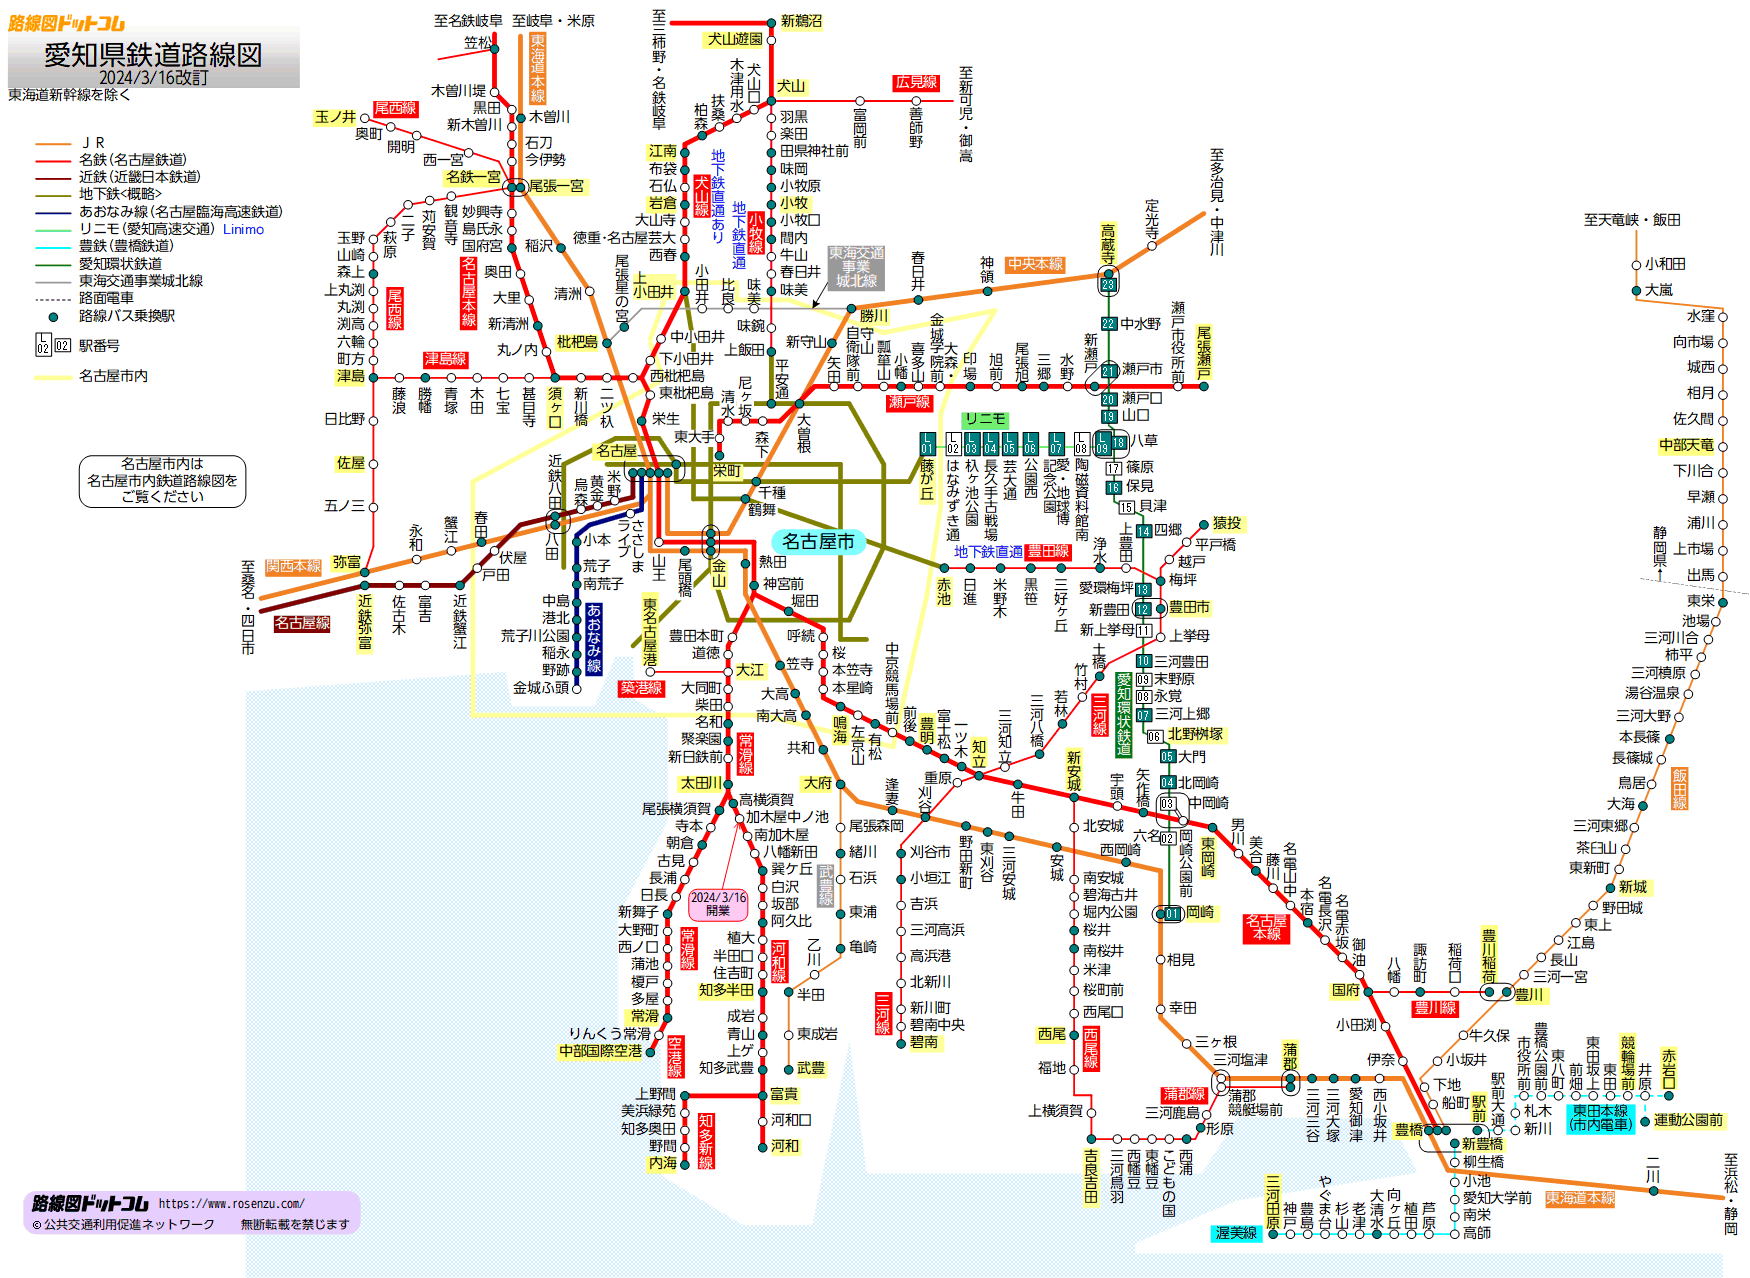 路線図ドットコム 愛知県鉄道路線図